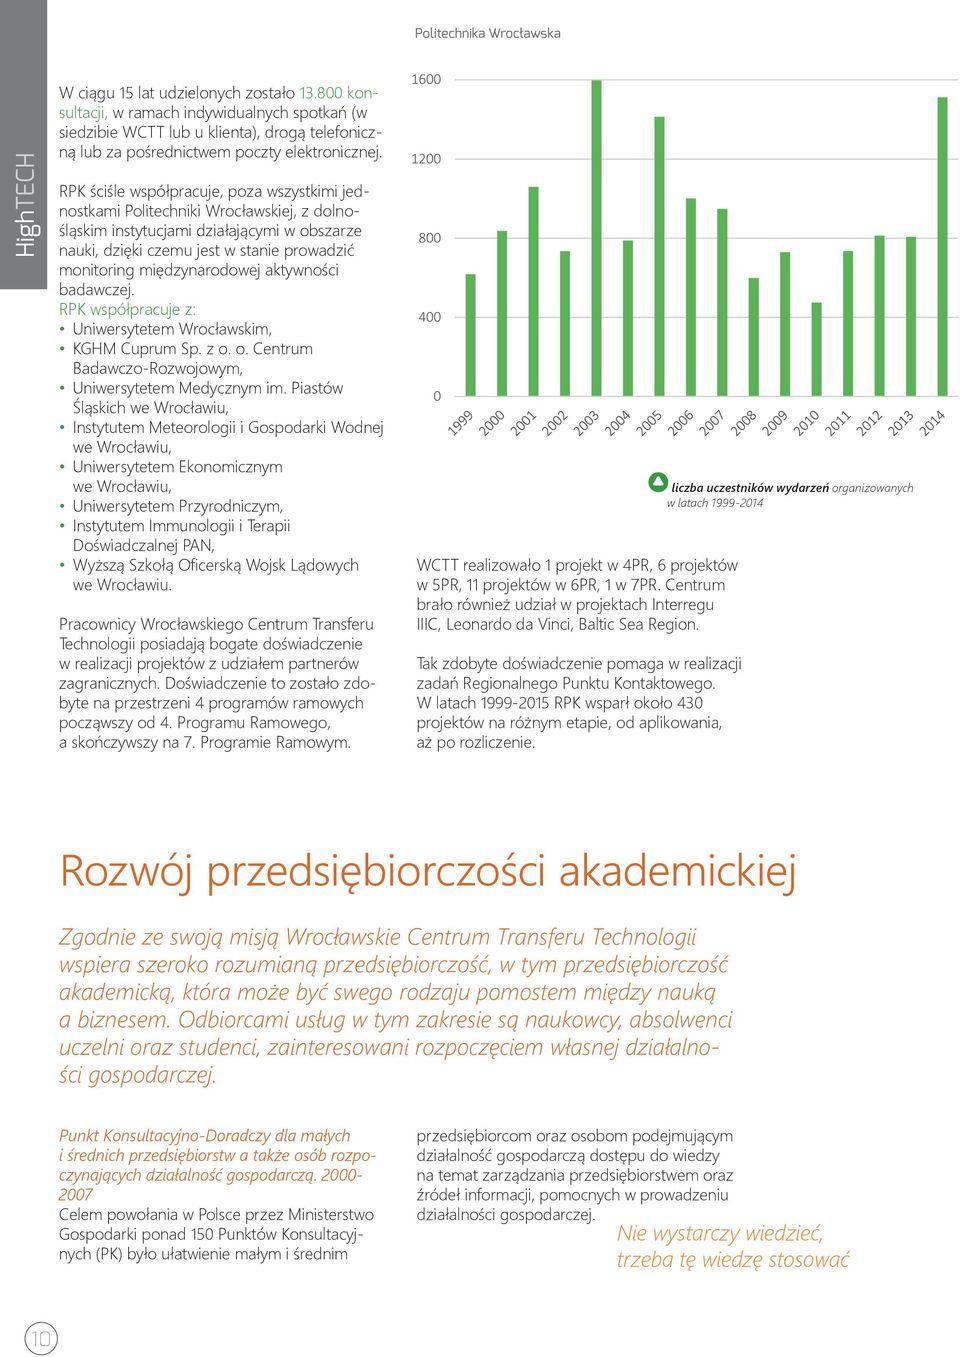 RPK ściśle współpracuje, poza wszystkimi jednostkami Politechniki Wrocławskiej, z dolnośląskim instytucjami działającymi w obszarze nauki, dzięki czemu jest w stanie prowadzić monitoring